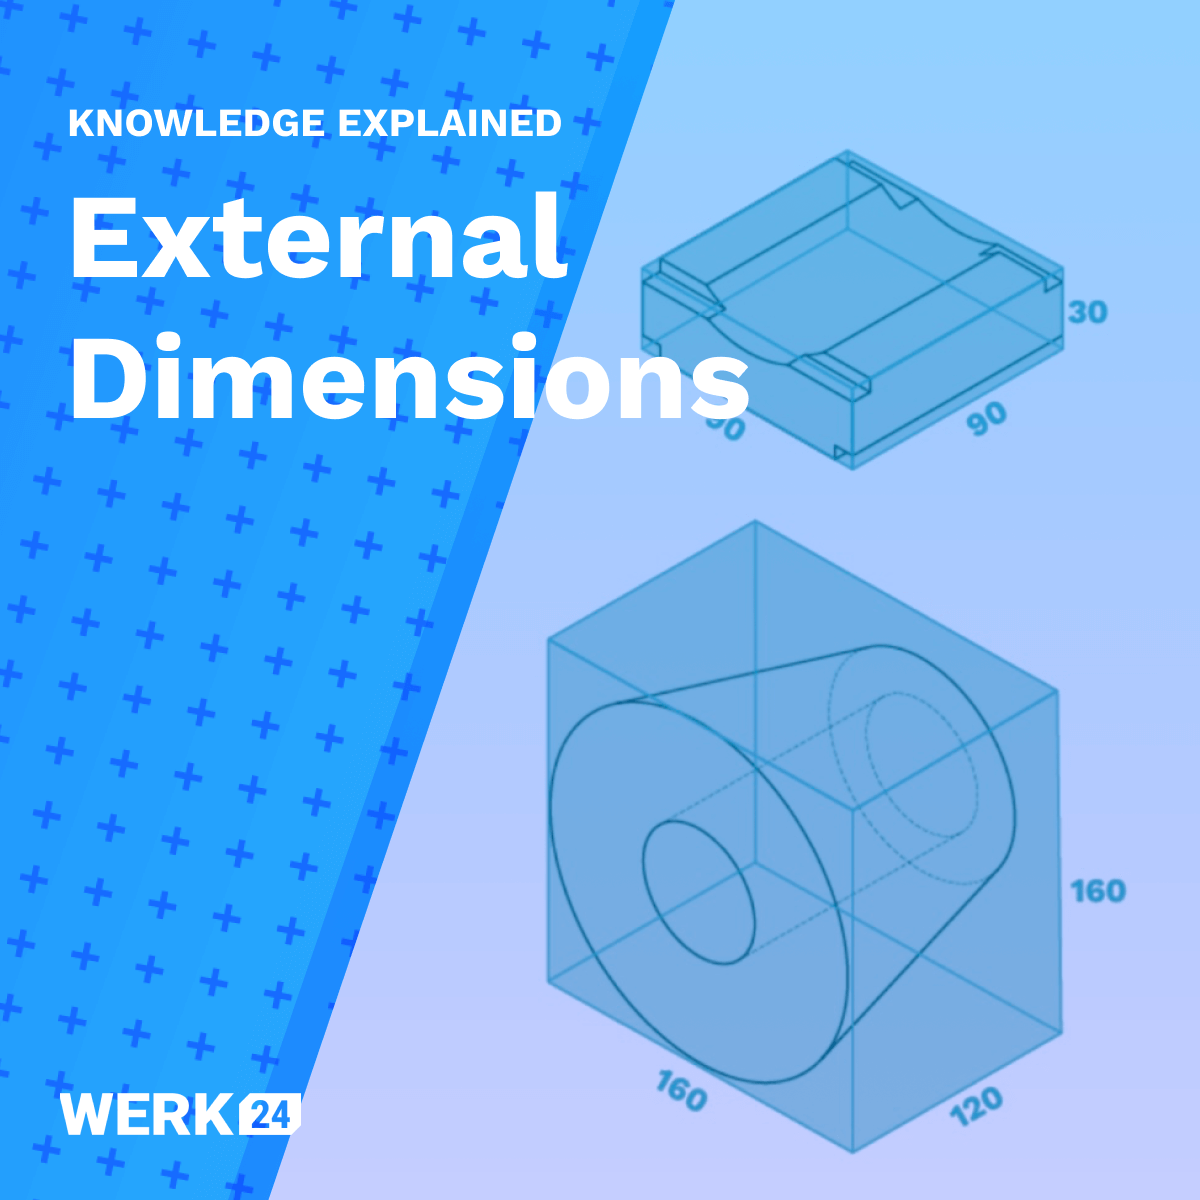 Importancia de la extracción de las dimensiones externas